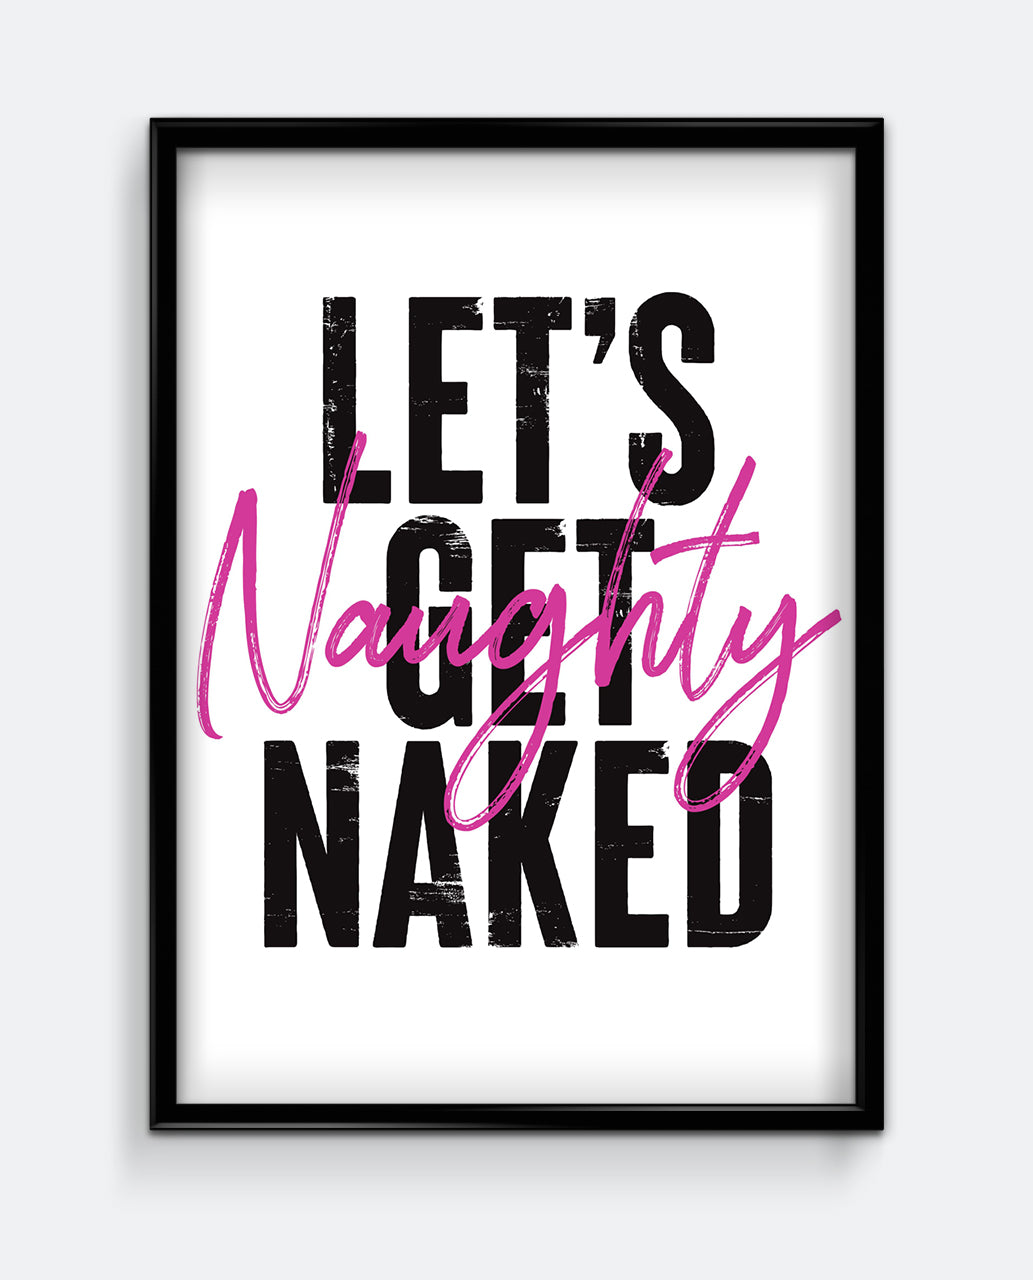 Let’s Get Naked